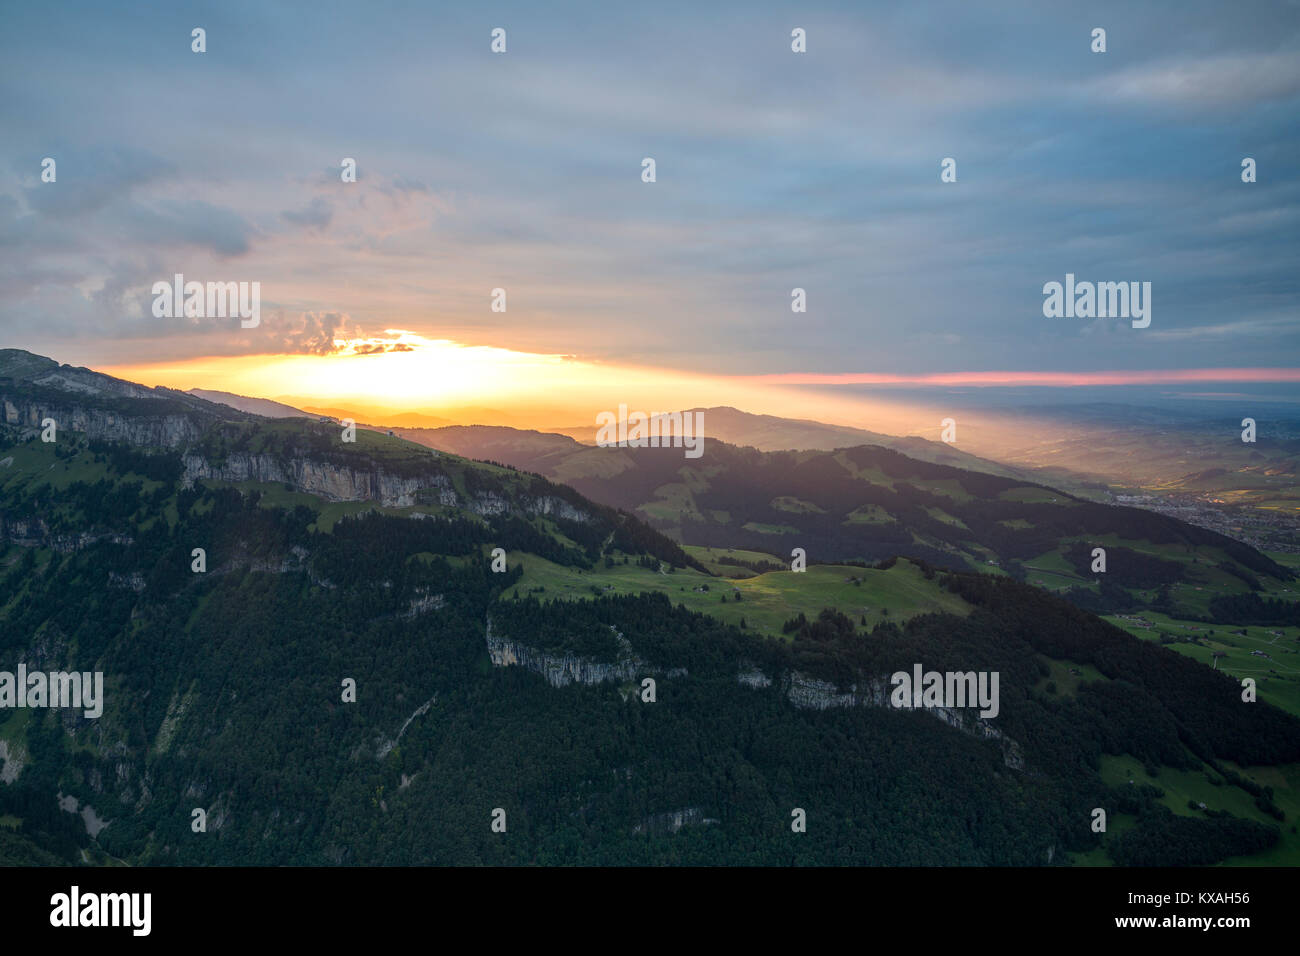 View of Ebenalp and Äscher from Alpsigel at sunset, Brülisau, Appenzell Innerrhoden, Switzerland Stock Photo